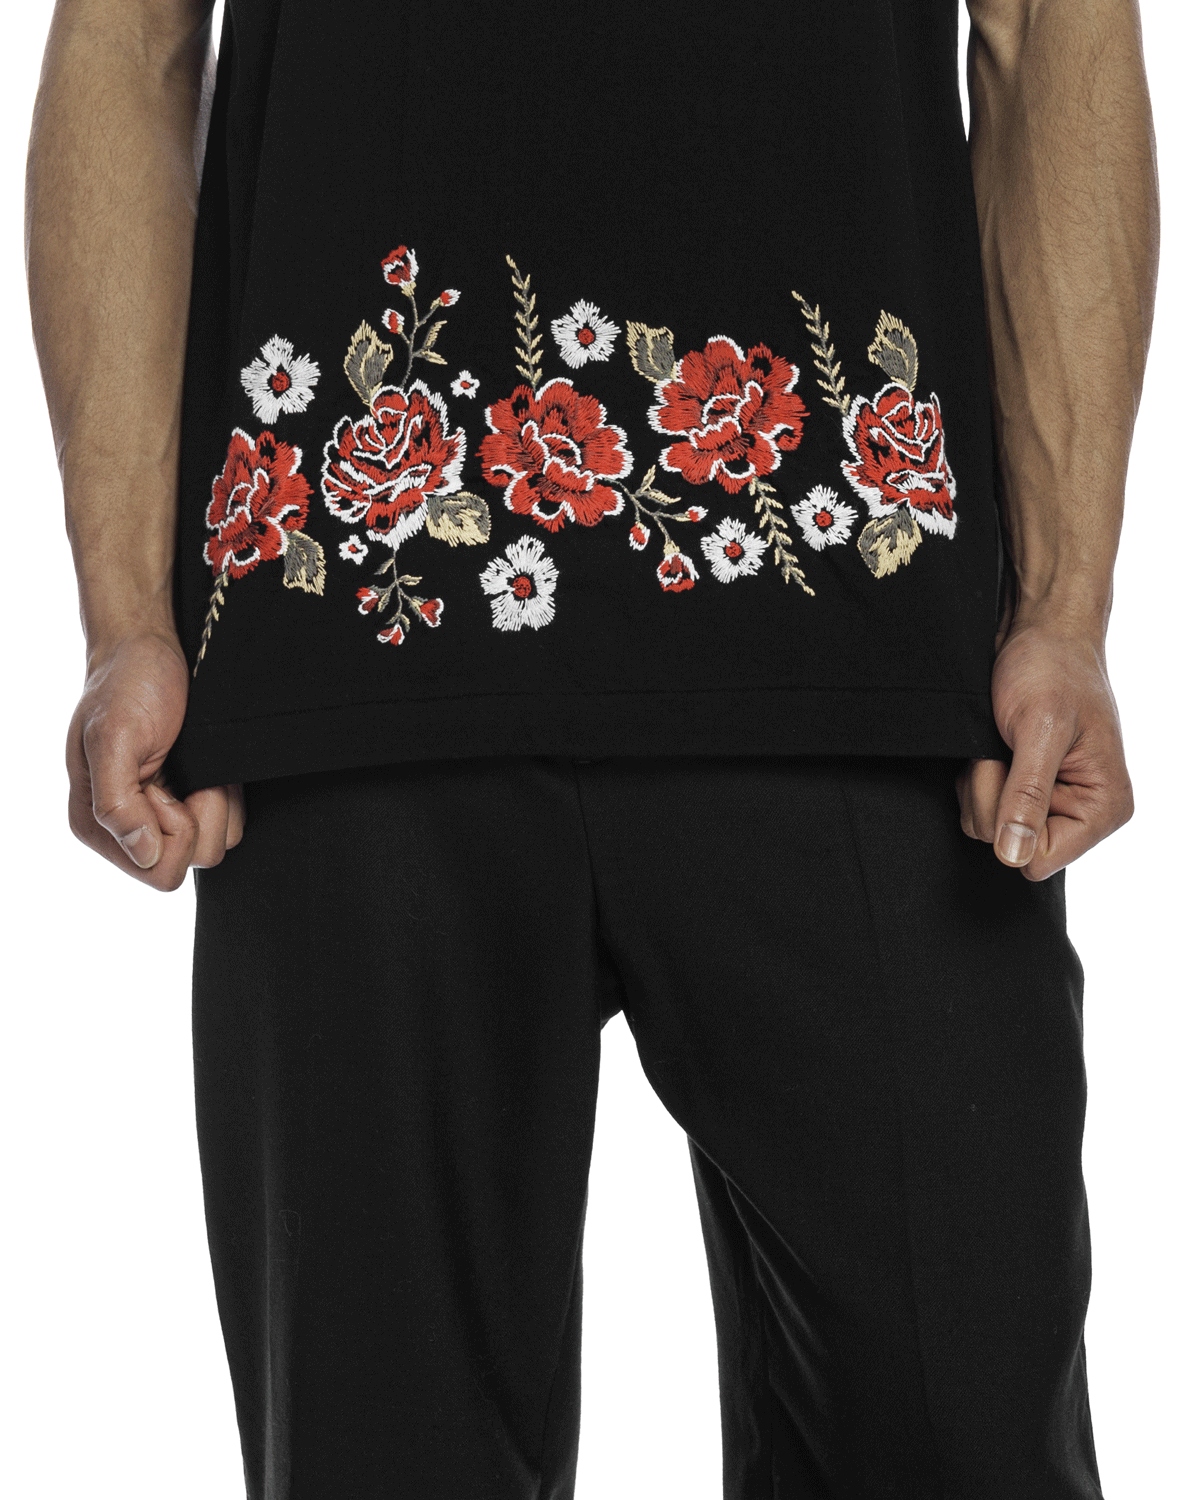 Hem Roses Embroidery Tee Black